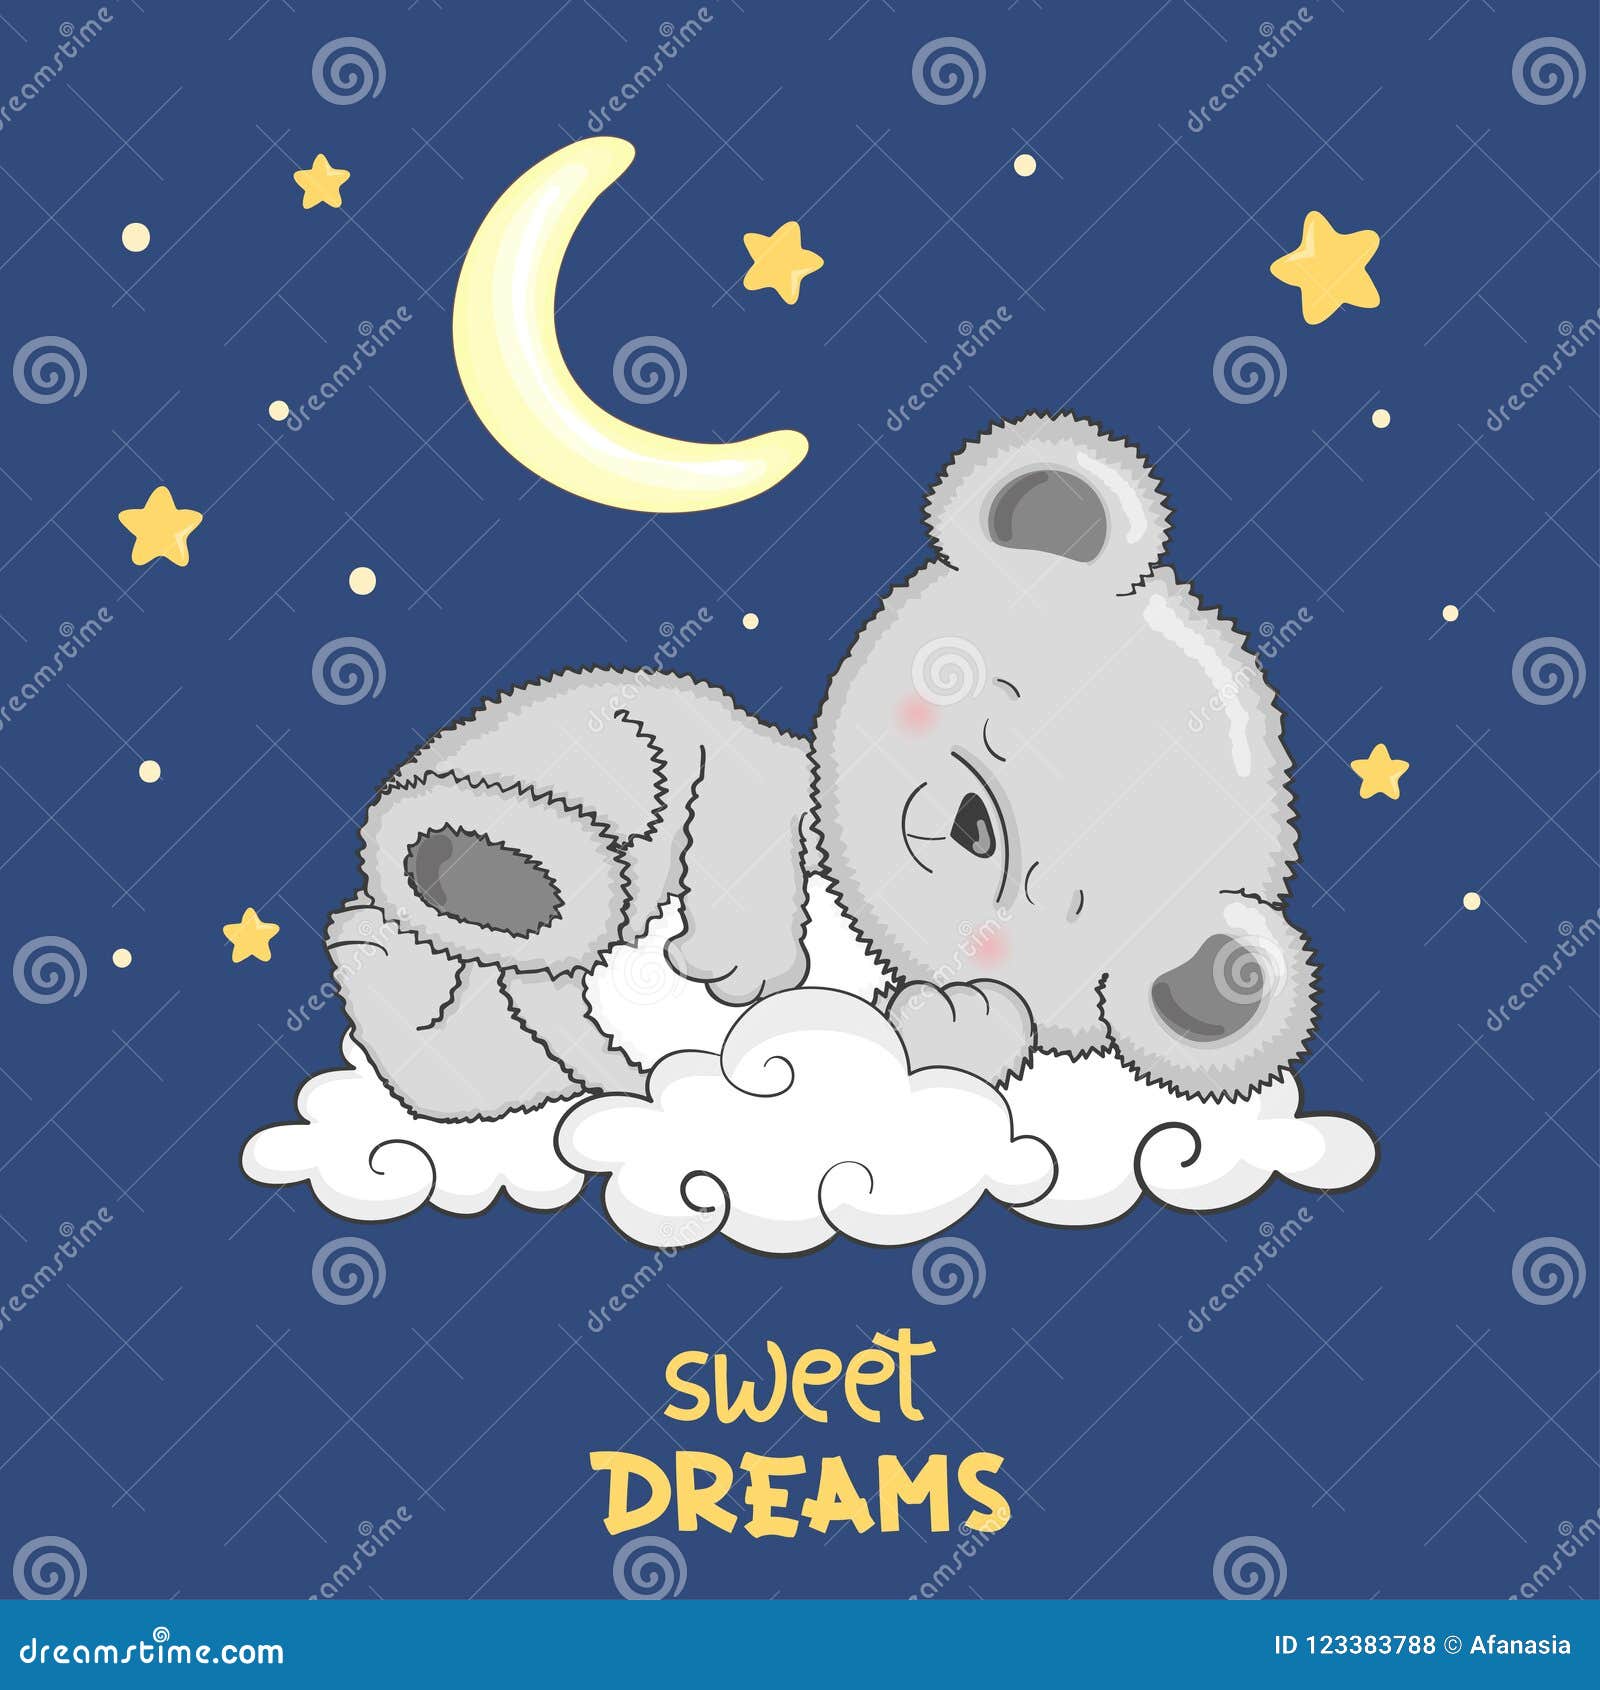 Cute Teddy Bear Sleeping on the Cloud. Sweet Dreams Stock Vector ...